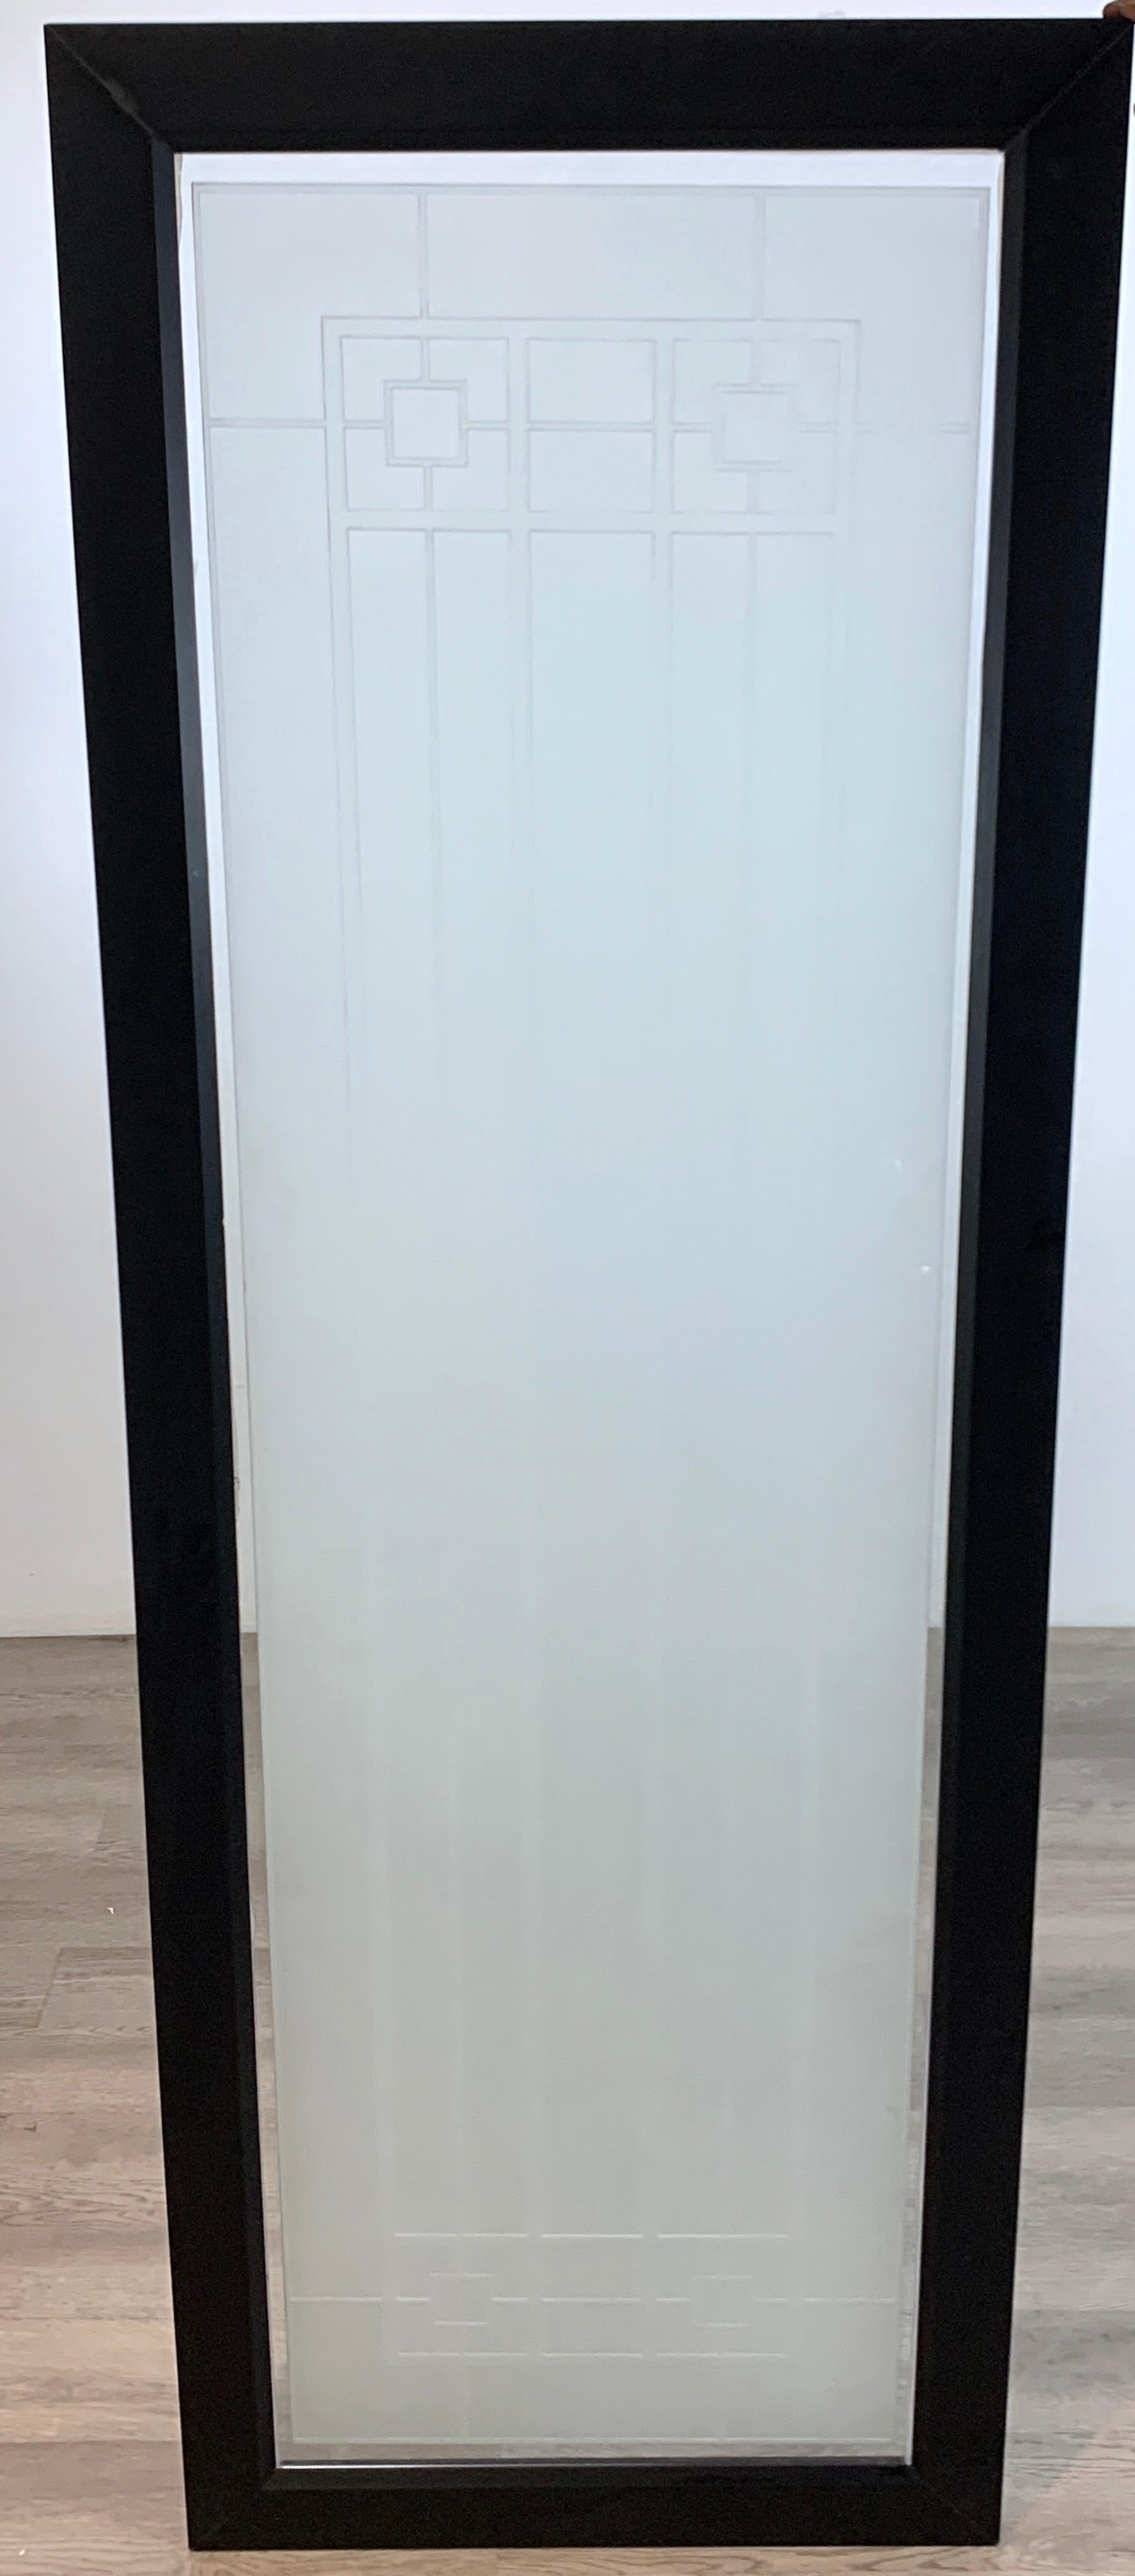 Großes Milchglasfenster im Prärie-Stil, im Stil von Frank Lloyd Wright, 4 Stück erhältlich
Schwer zu fotografieren, groß und maßstabsgetreu, von subtiler Schönheit, jedes in einem geschwärzten Holzrahmen untergebracht, bereit zum Aufhängen oder